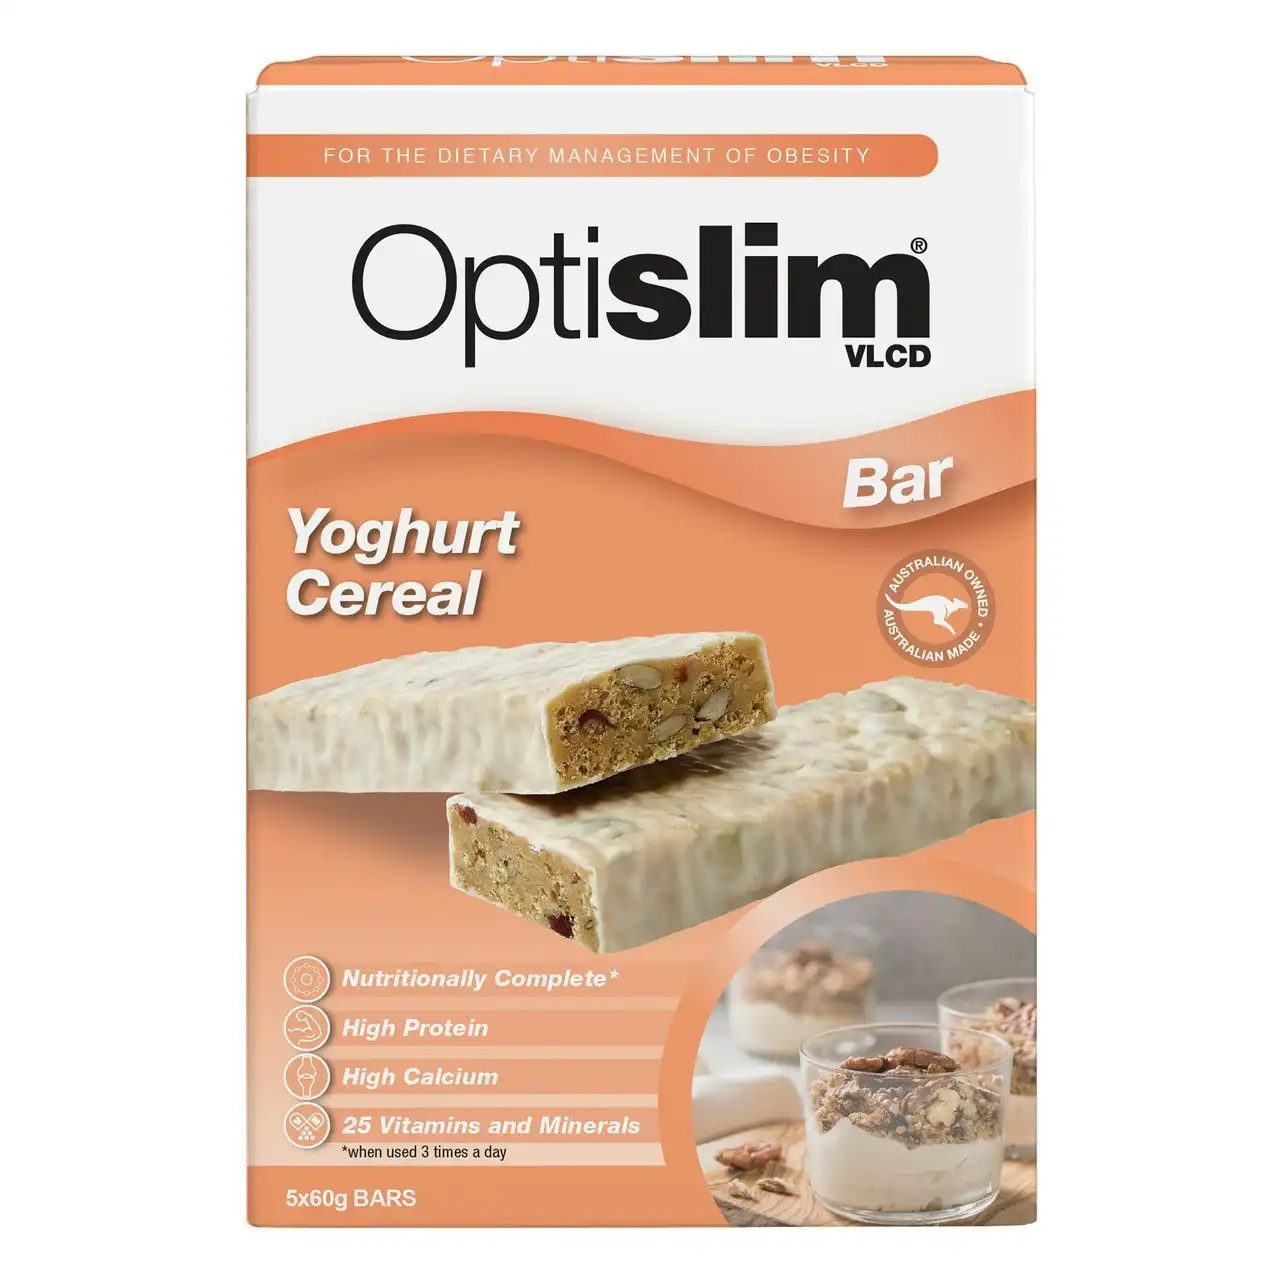 Optislim VLCD Yoghurt Cereal Bar 5x60g